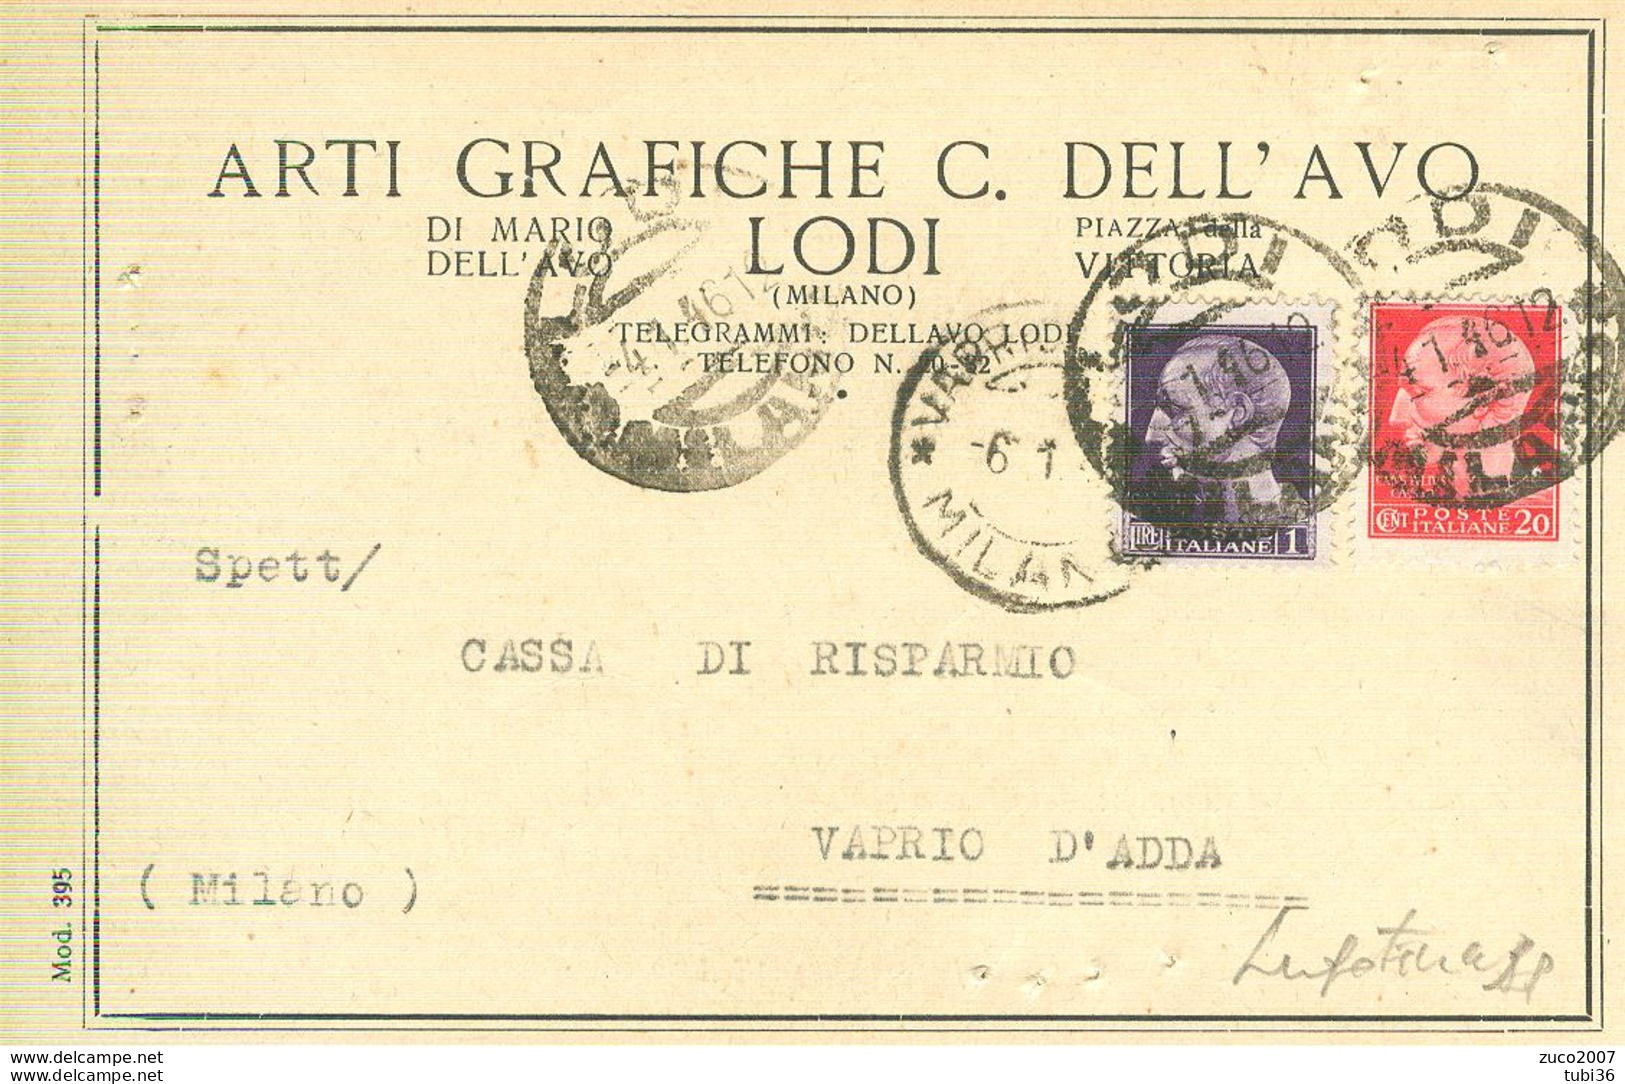 DELL'AVO, LODI - ARTI GRAFICHE -CARTOLINA RICEVUTA PAGAMENTO, 1945, CON MARCHE DA BOLLO - Lodi